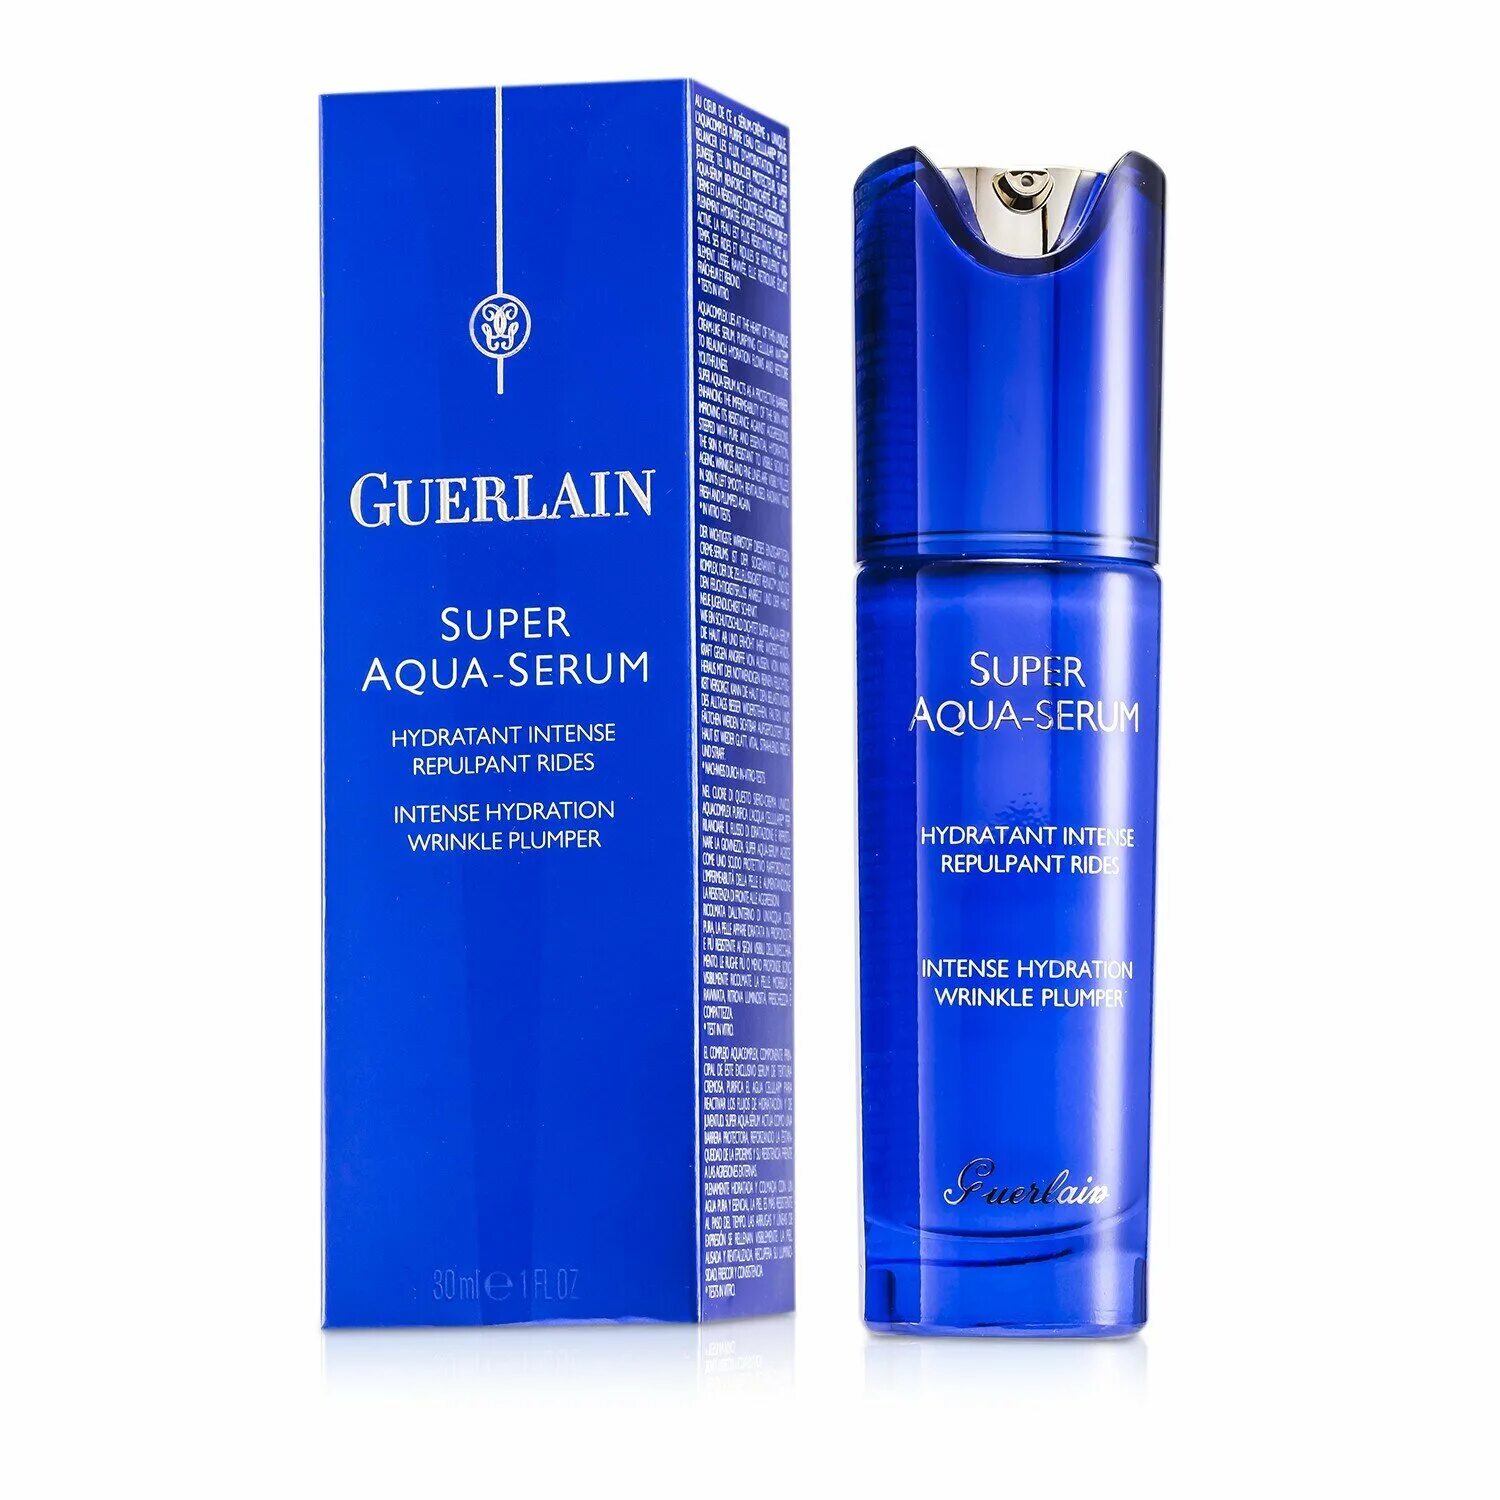 Super Aqua Serum Guerlain. Guerlain super Aqua Serum наборы. Сыворотка для лица super Aqua-Serum Guerlain. Super Aqua Emulsion Guerlain.